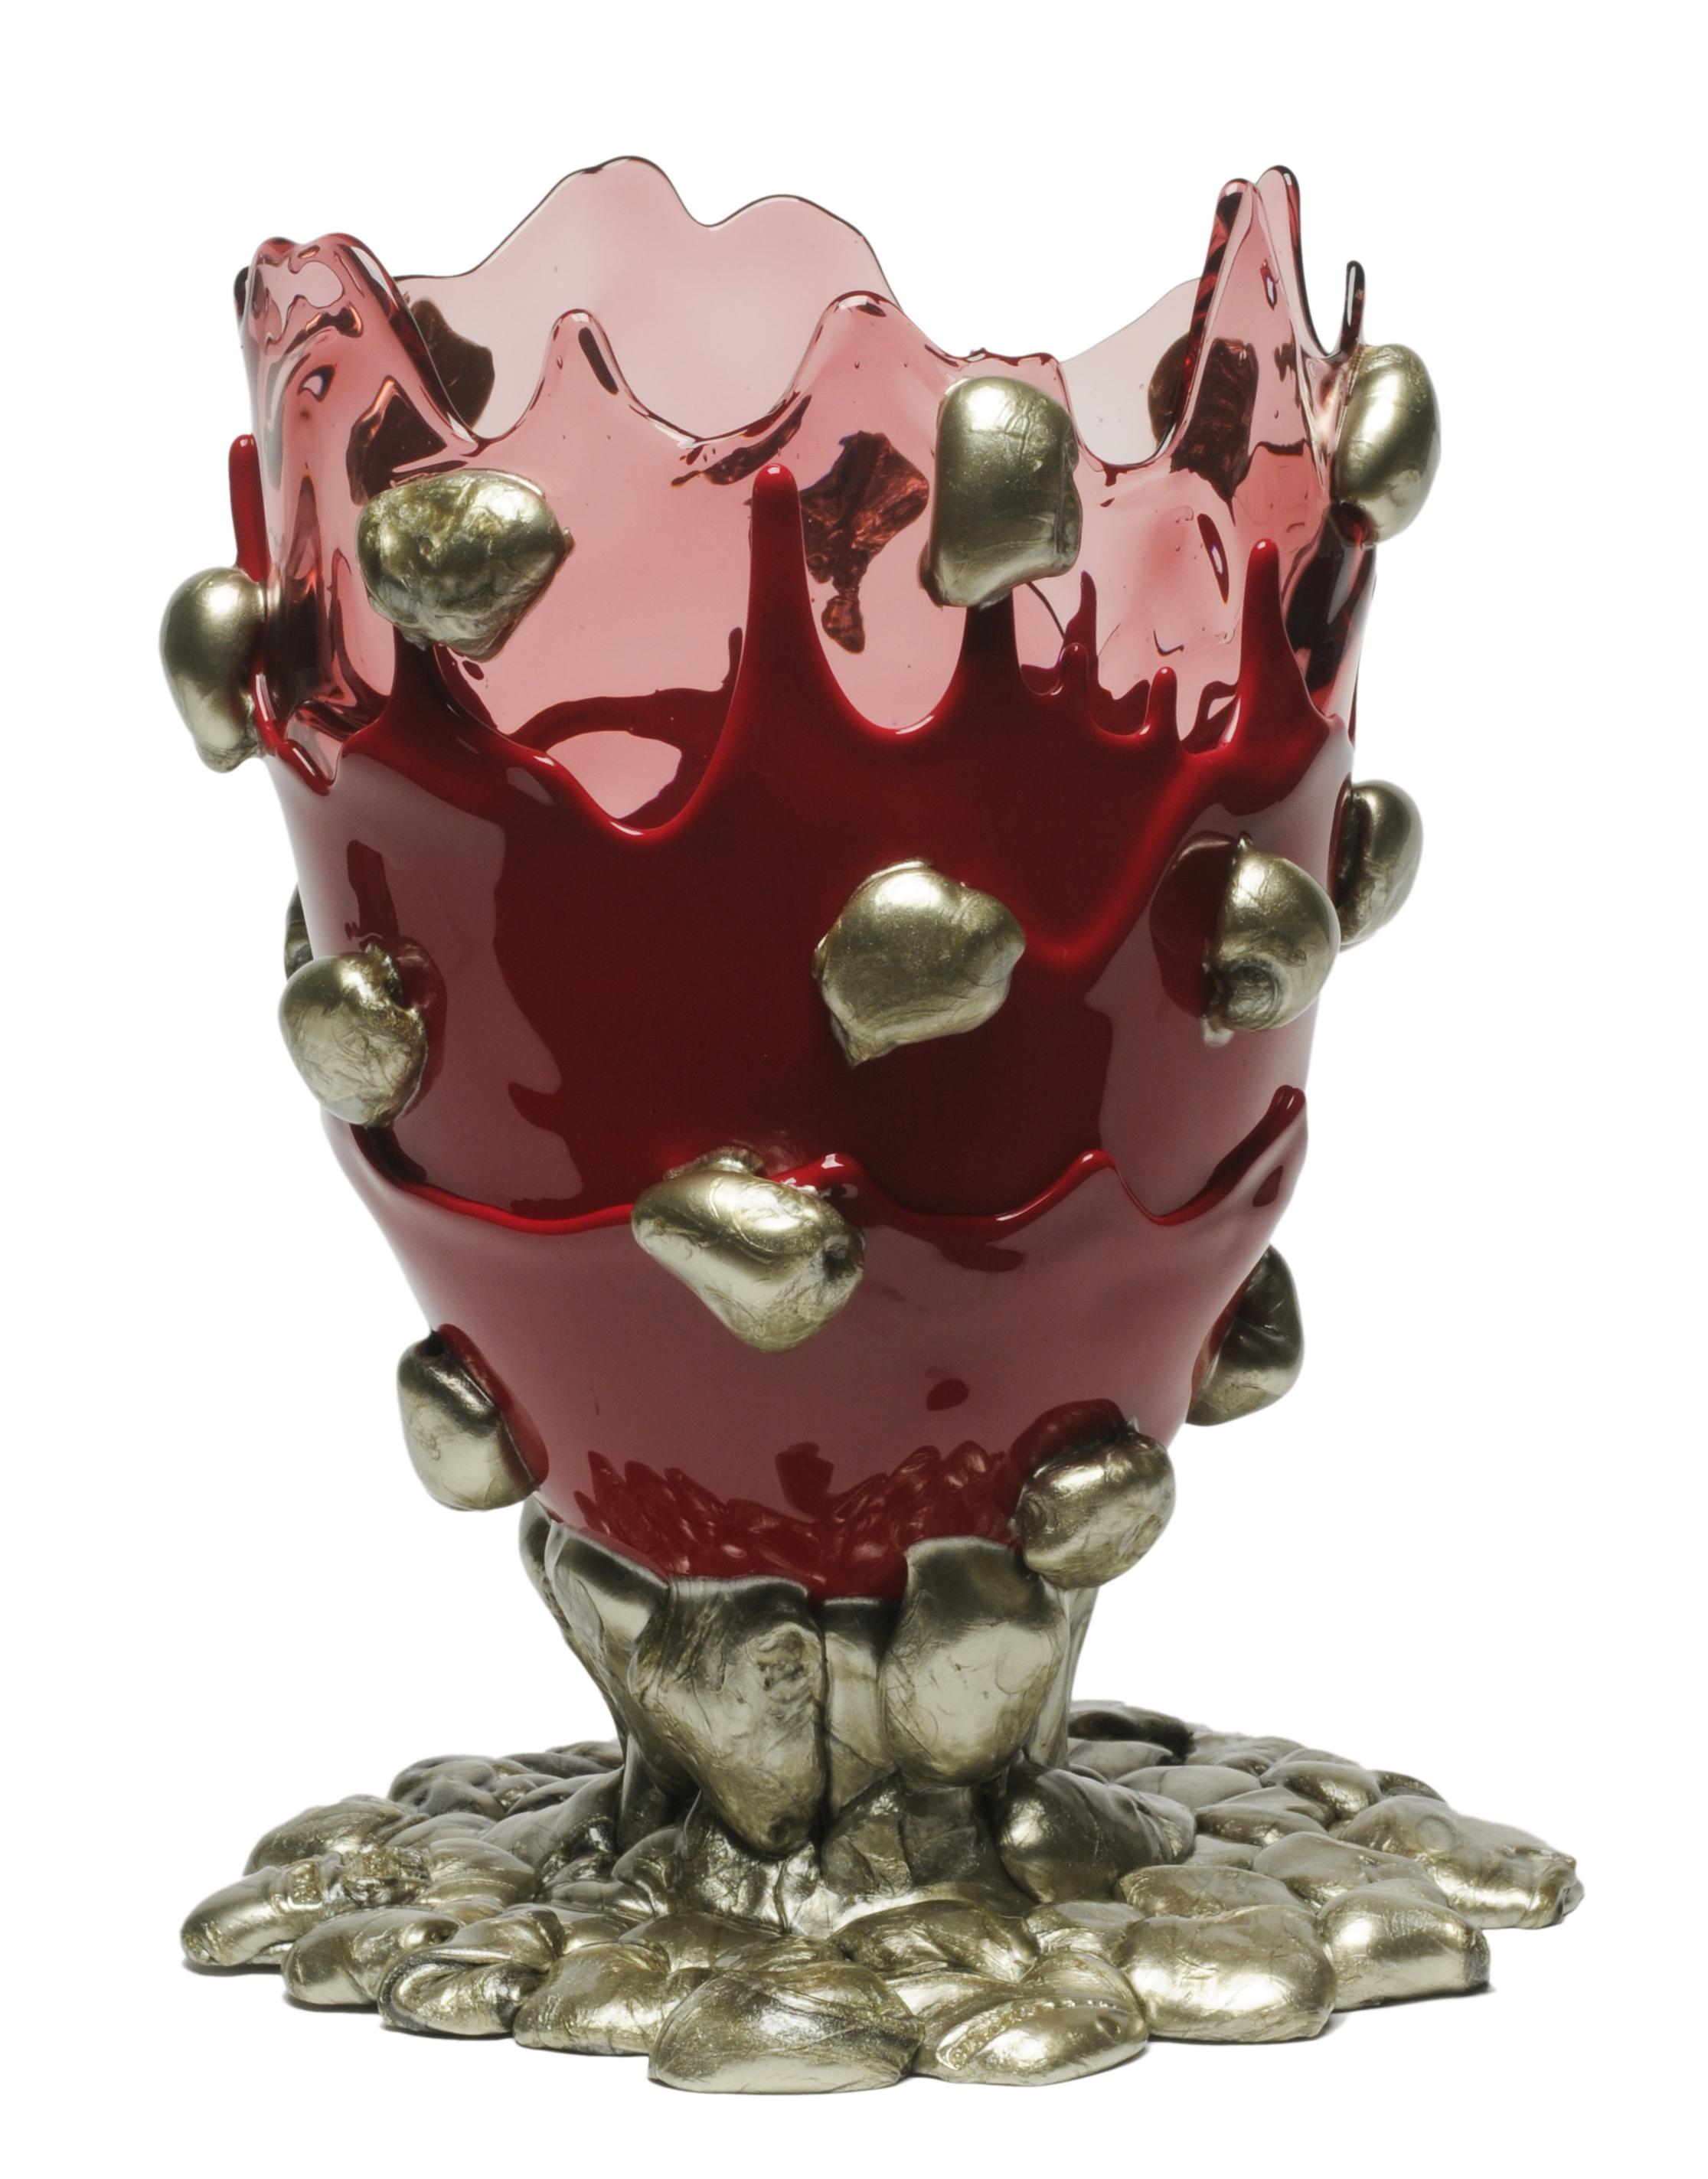 Vase Nugget, klar rosa, matt kirschrot und bronze.
Vase aus weichem Harz, entworfen von Gaetano Pesce im Jahr 1995 für die Kollektion Fish Design.

Maße: L- Ø 22cm x H 36cm
Farben: rosa, kirschrot und bronzefarben.
Andere Größen verfügbar.
Vase aus